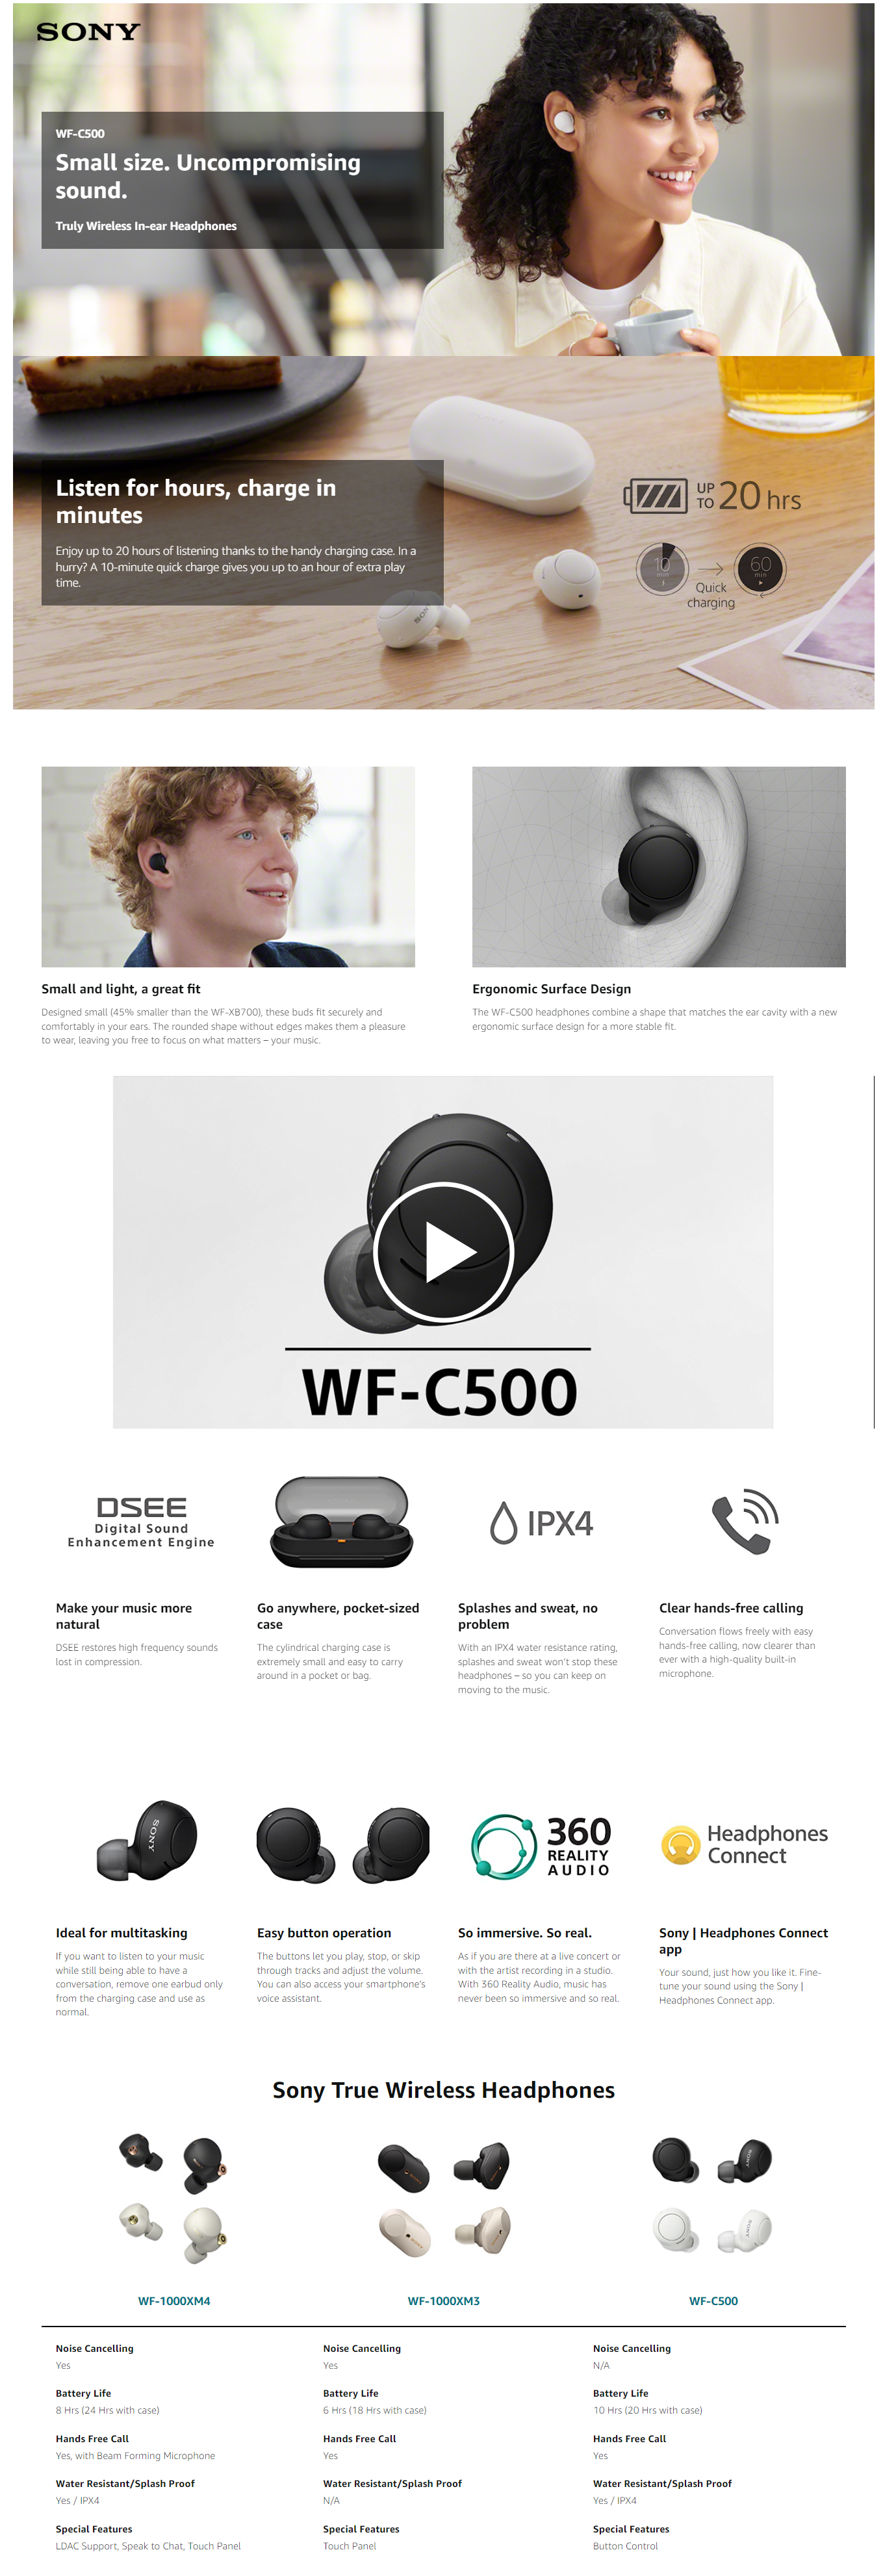 Especificações do WF-C500, True Wireless